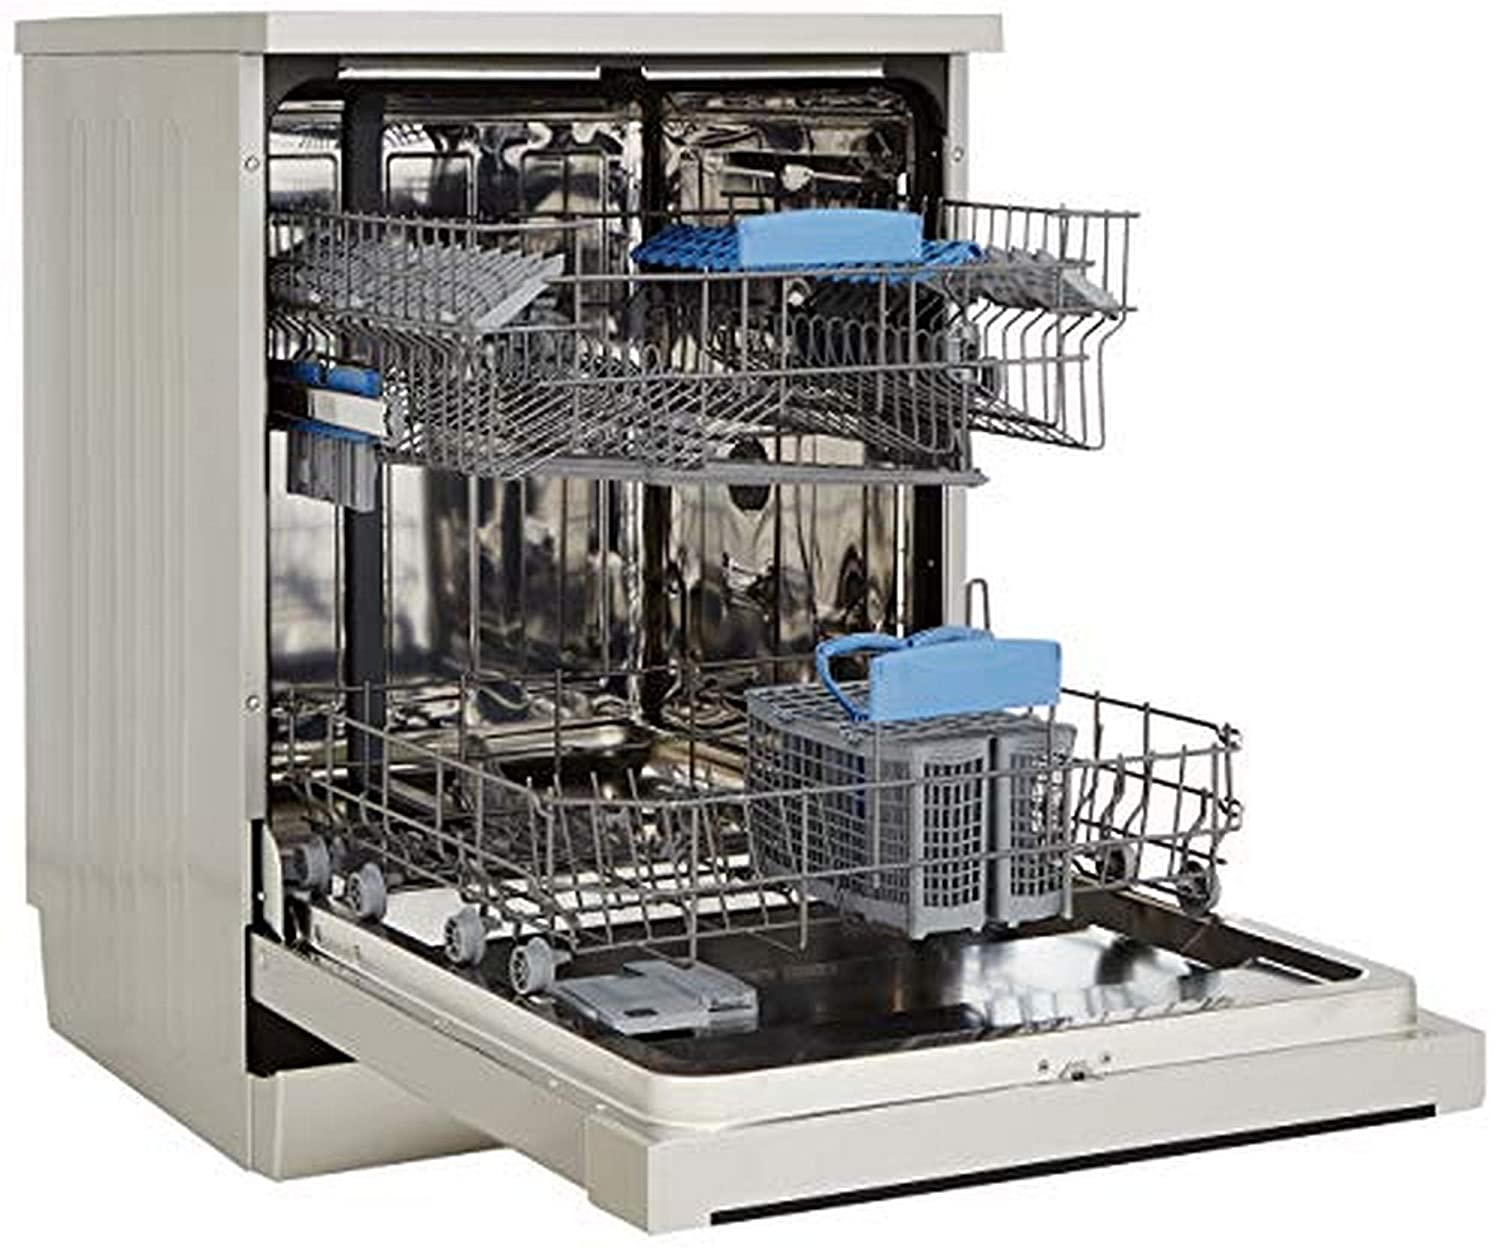 IFB Neptune VX Fully Electronic Dishwasher (12 Place Settings, Dark Silver) - Mahajan Electronics Online